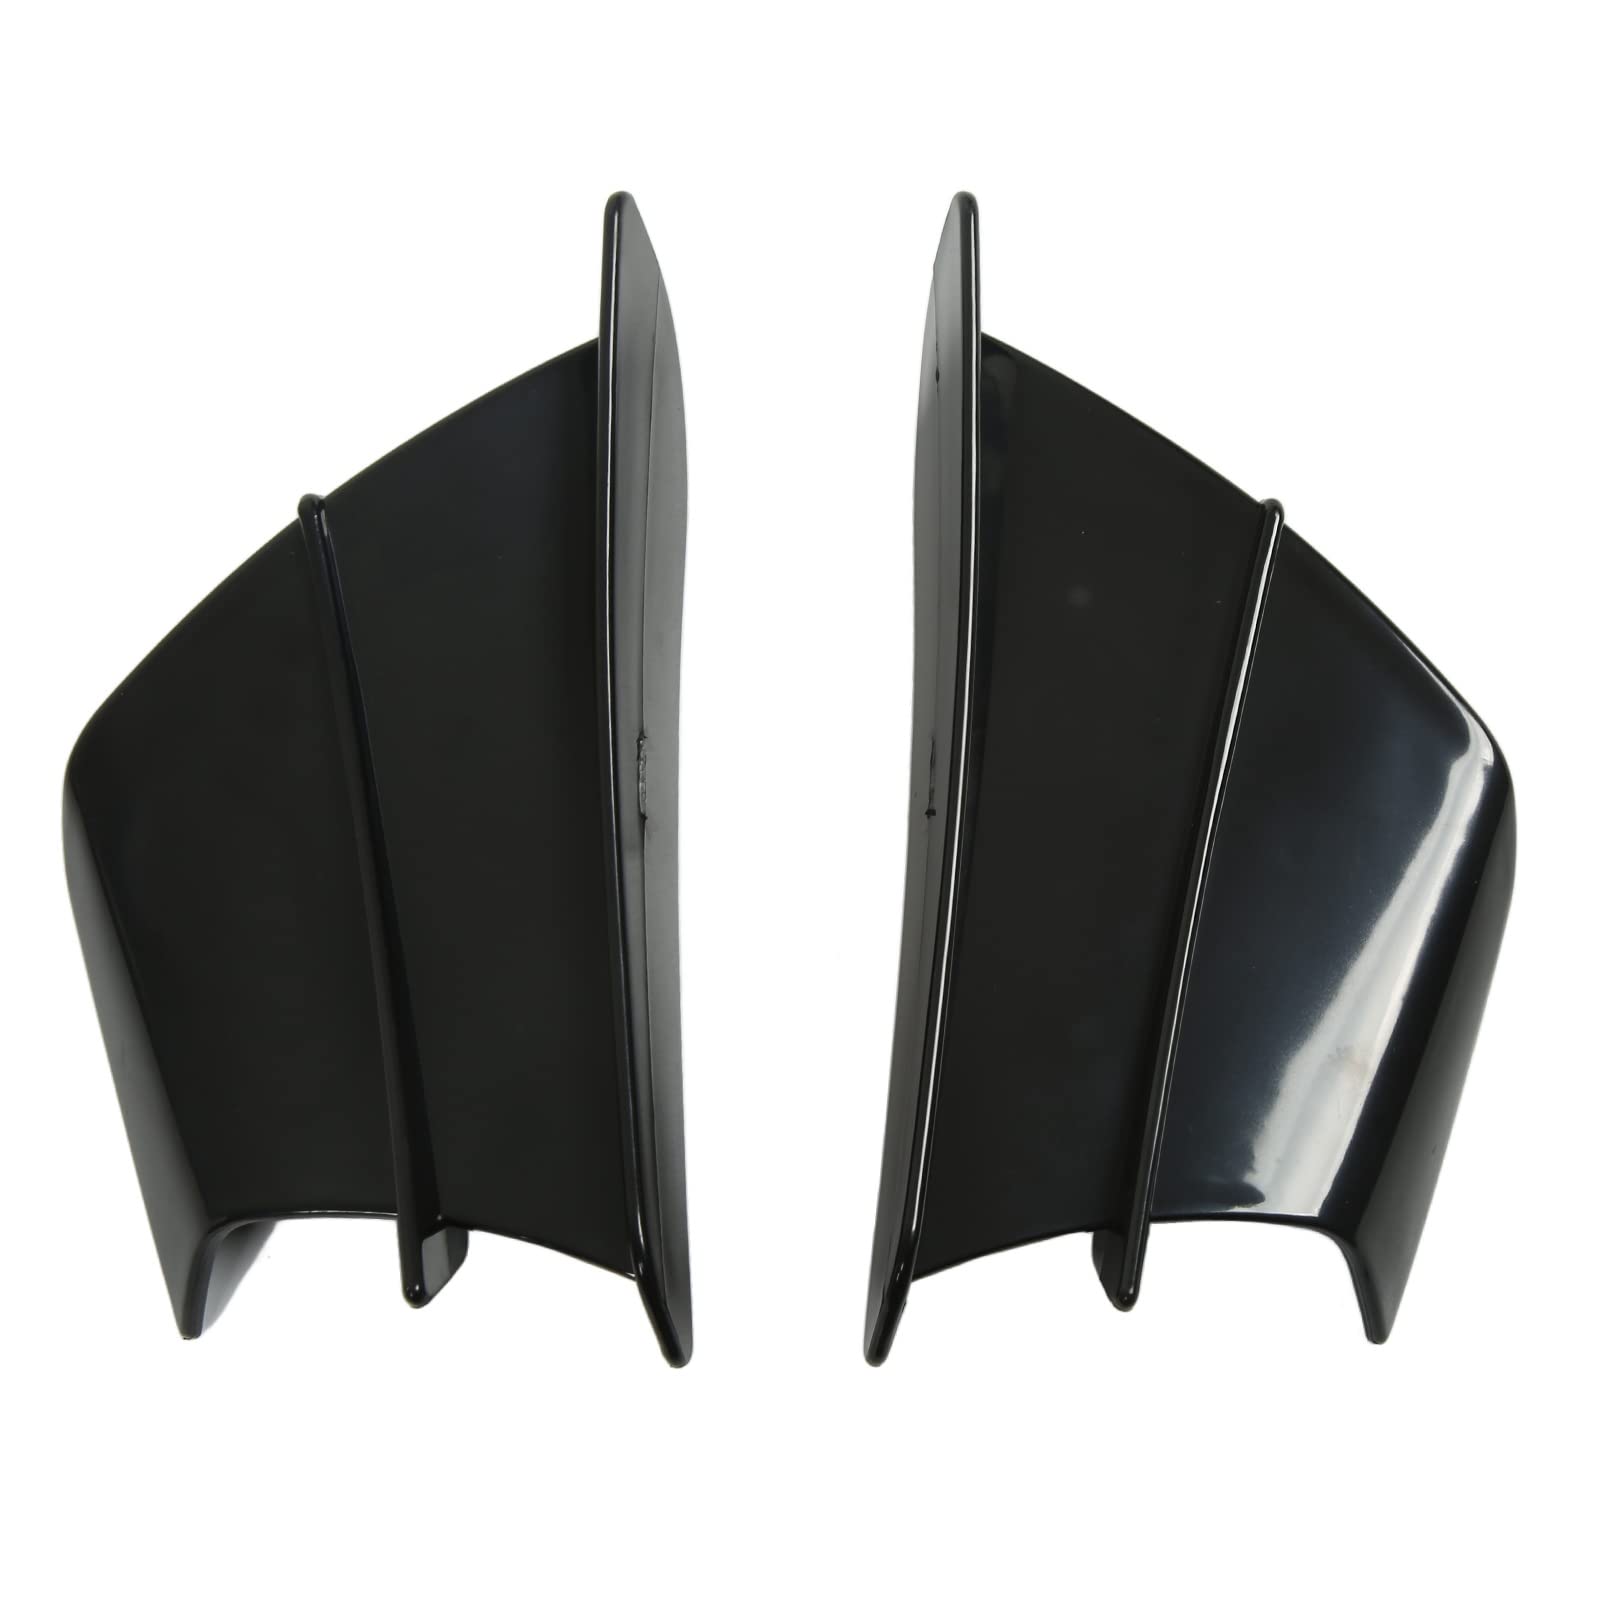 Shanrya Front-Verkleidungs-Flights, gewölbte Oberfläche, 3D-Design, seitlicher Spoiler für R1 R3 R25 (Schwarz glänzend) von Shanrya